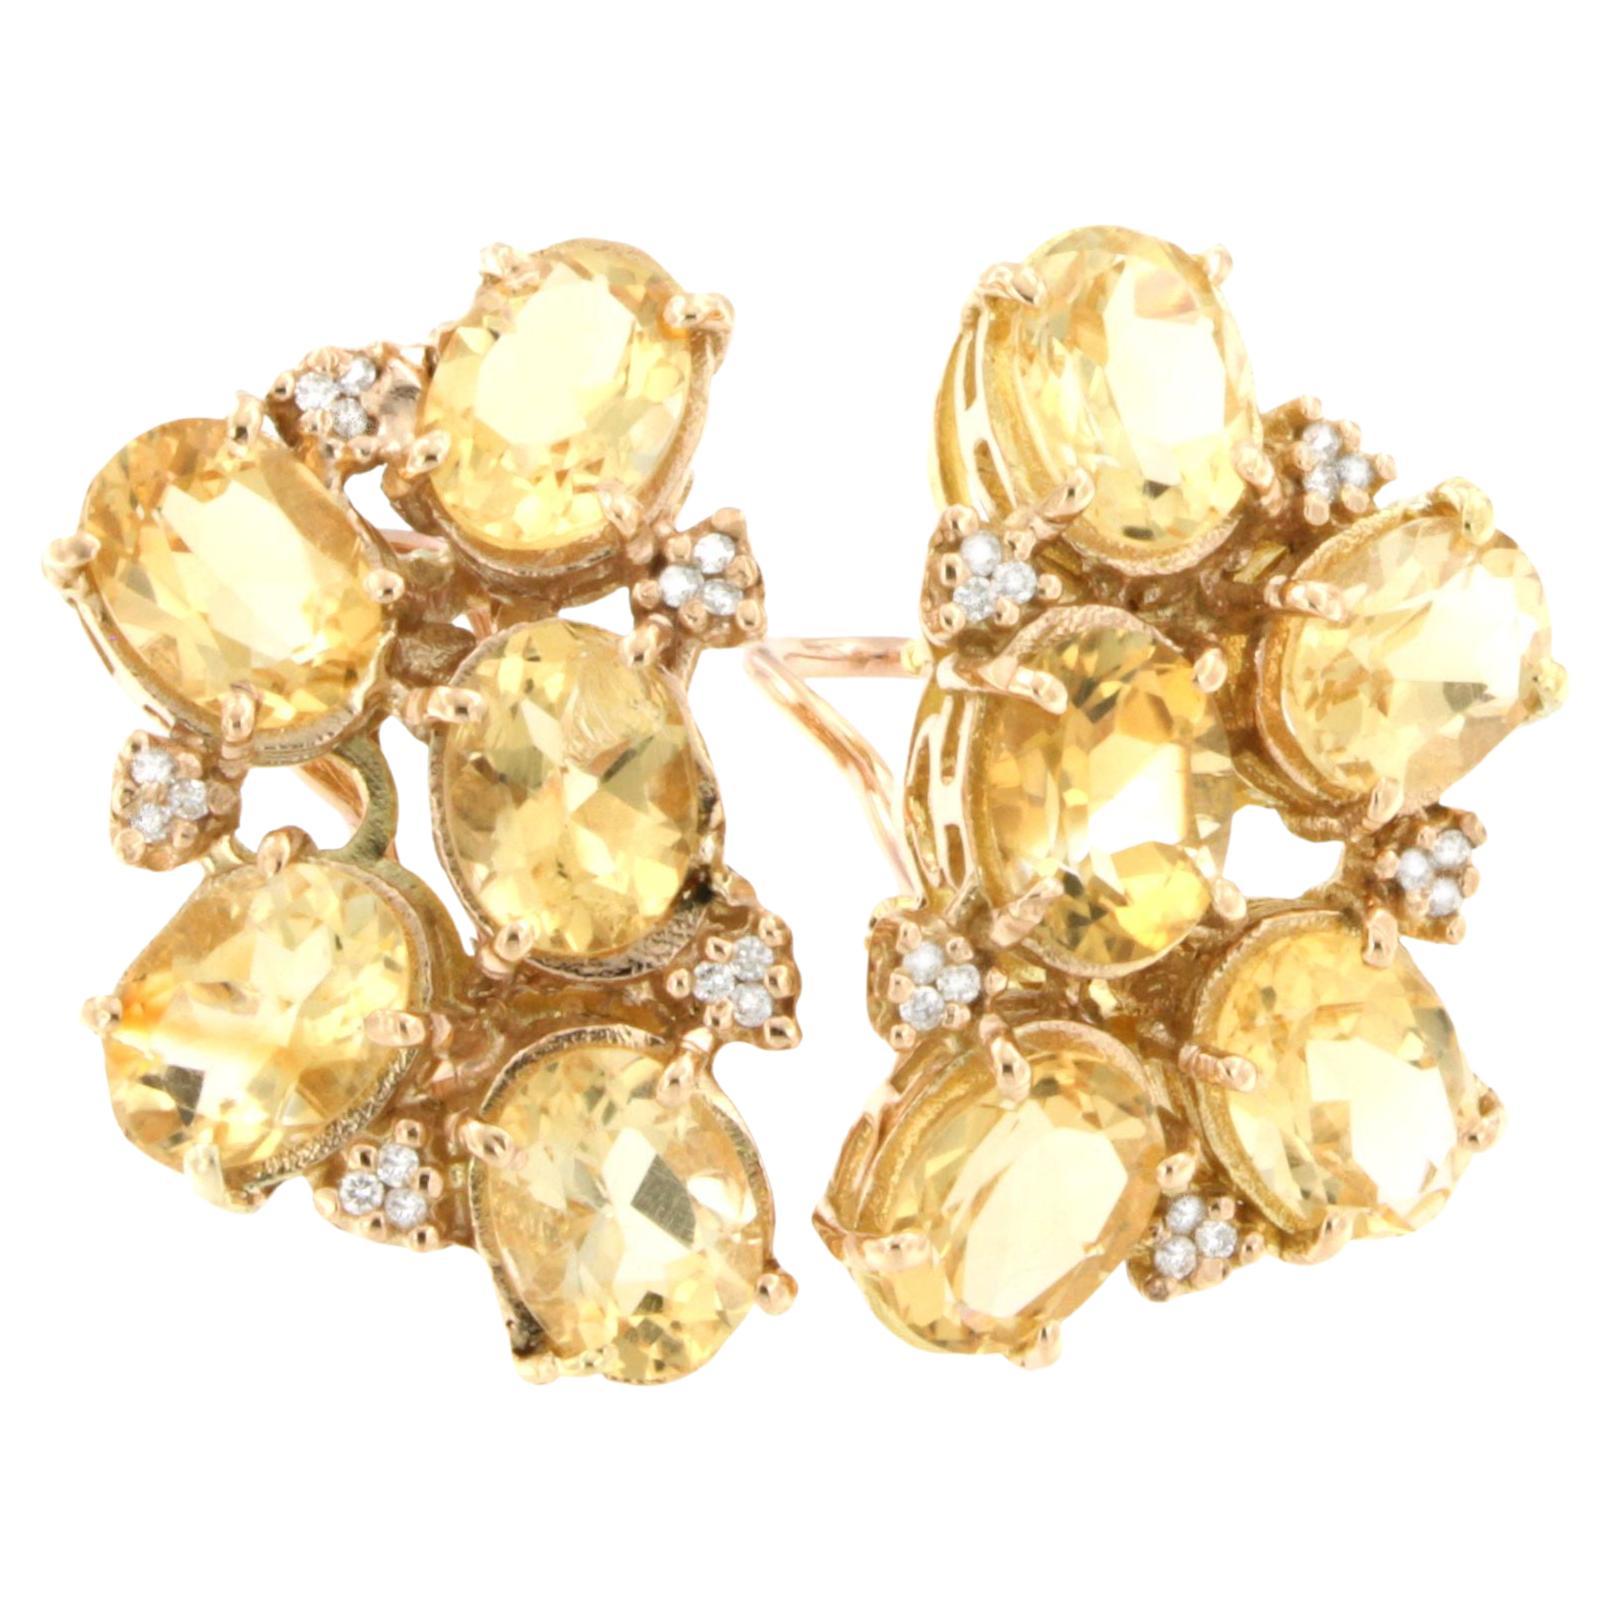 Incroyables boucles d'oreilles modernes en or rose 18 carats avec pierres de citrines jaunes et diamants blancs 